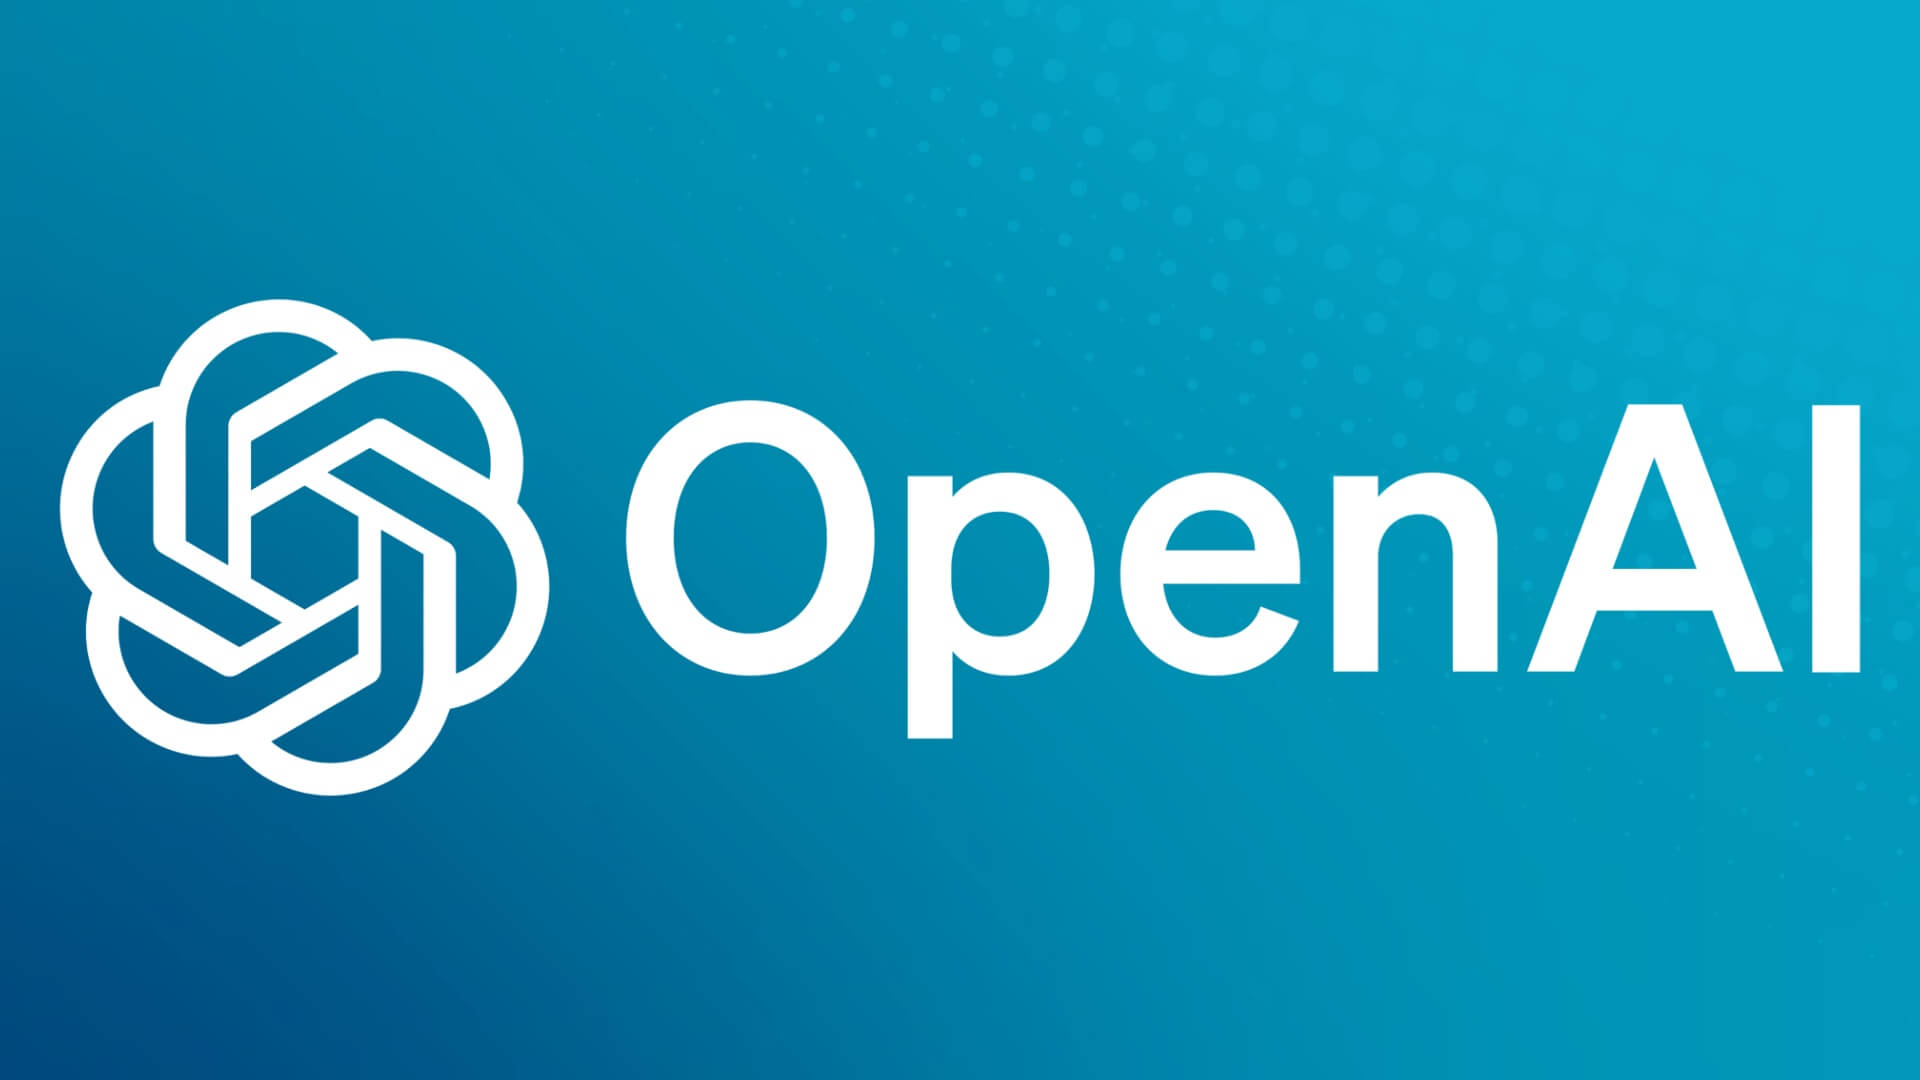 OpenAI lança ferramenta para combater imagens geradas por IA